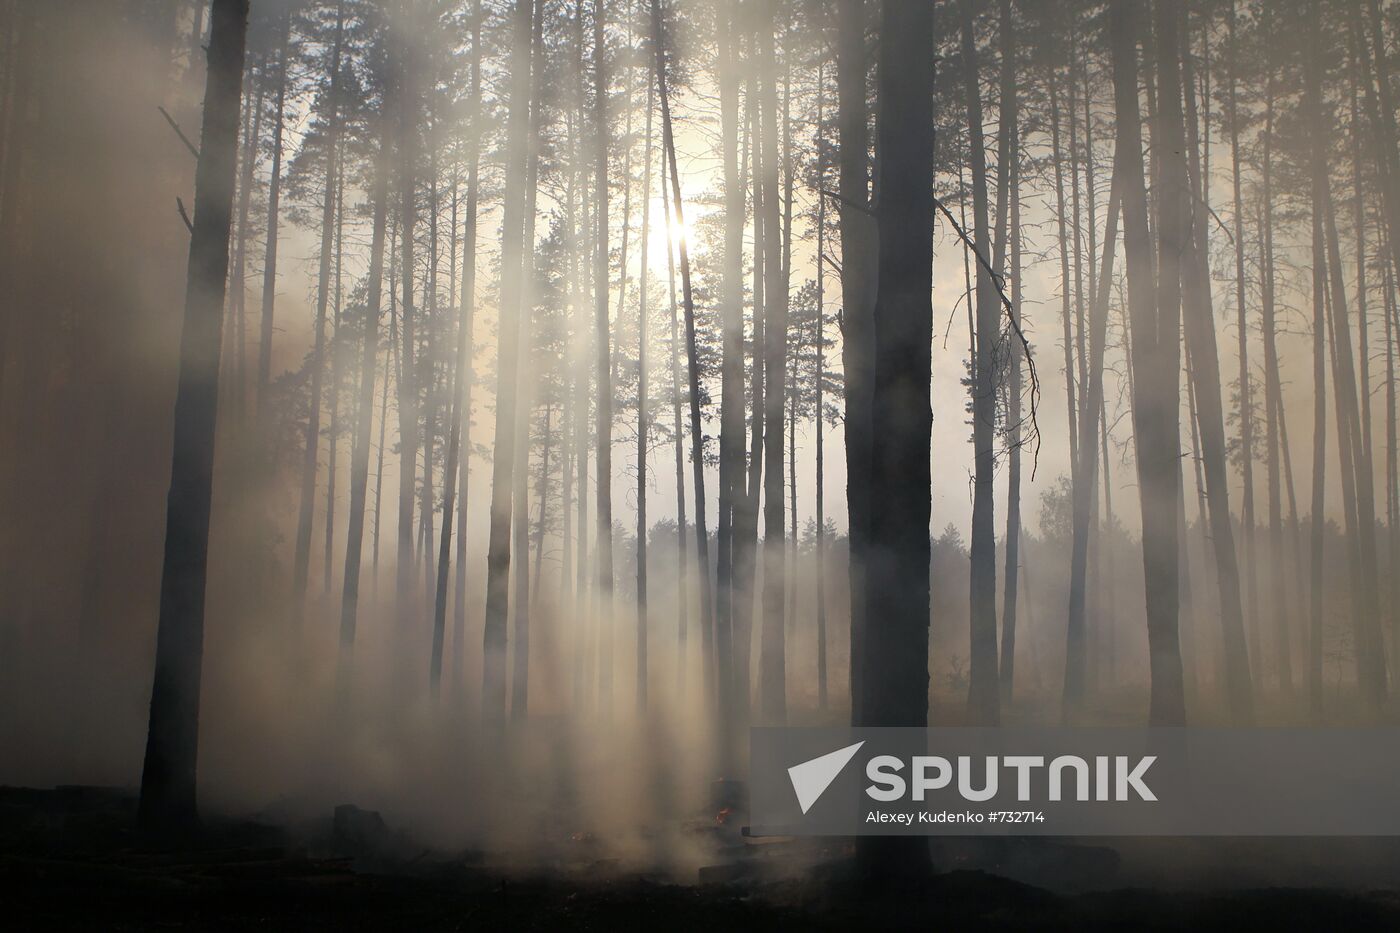 Forest fires in Voronezh Region